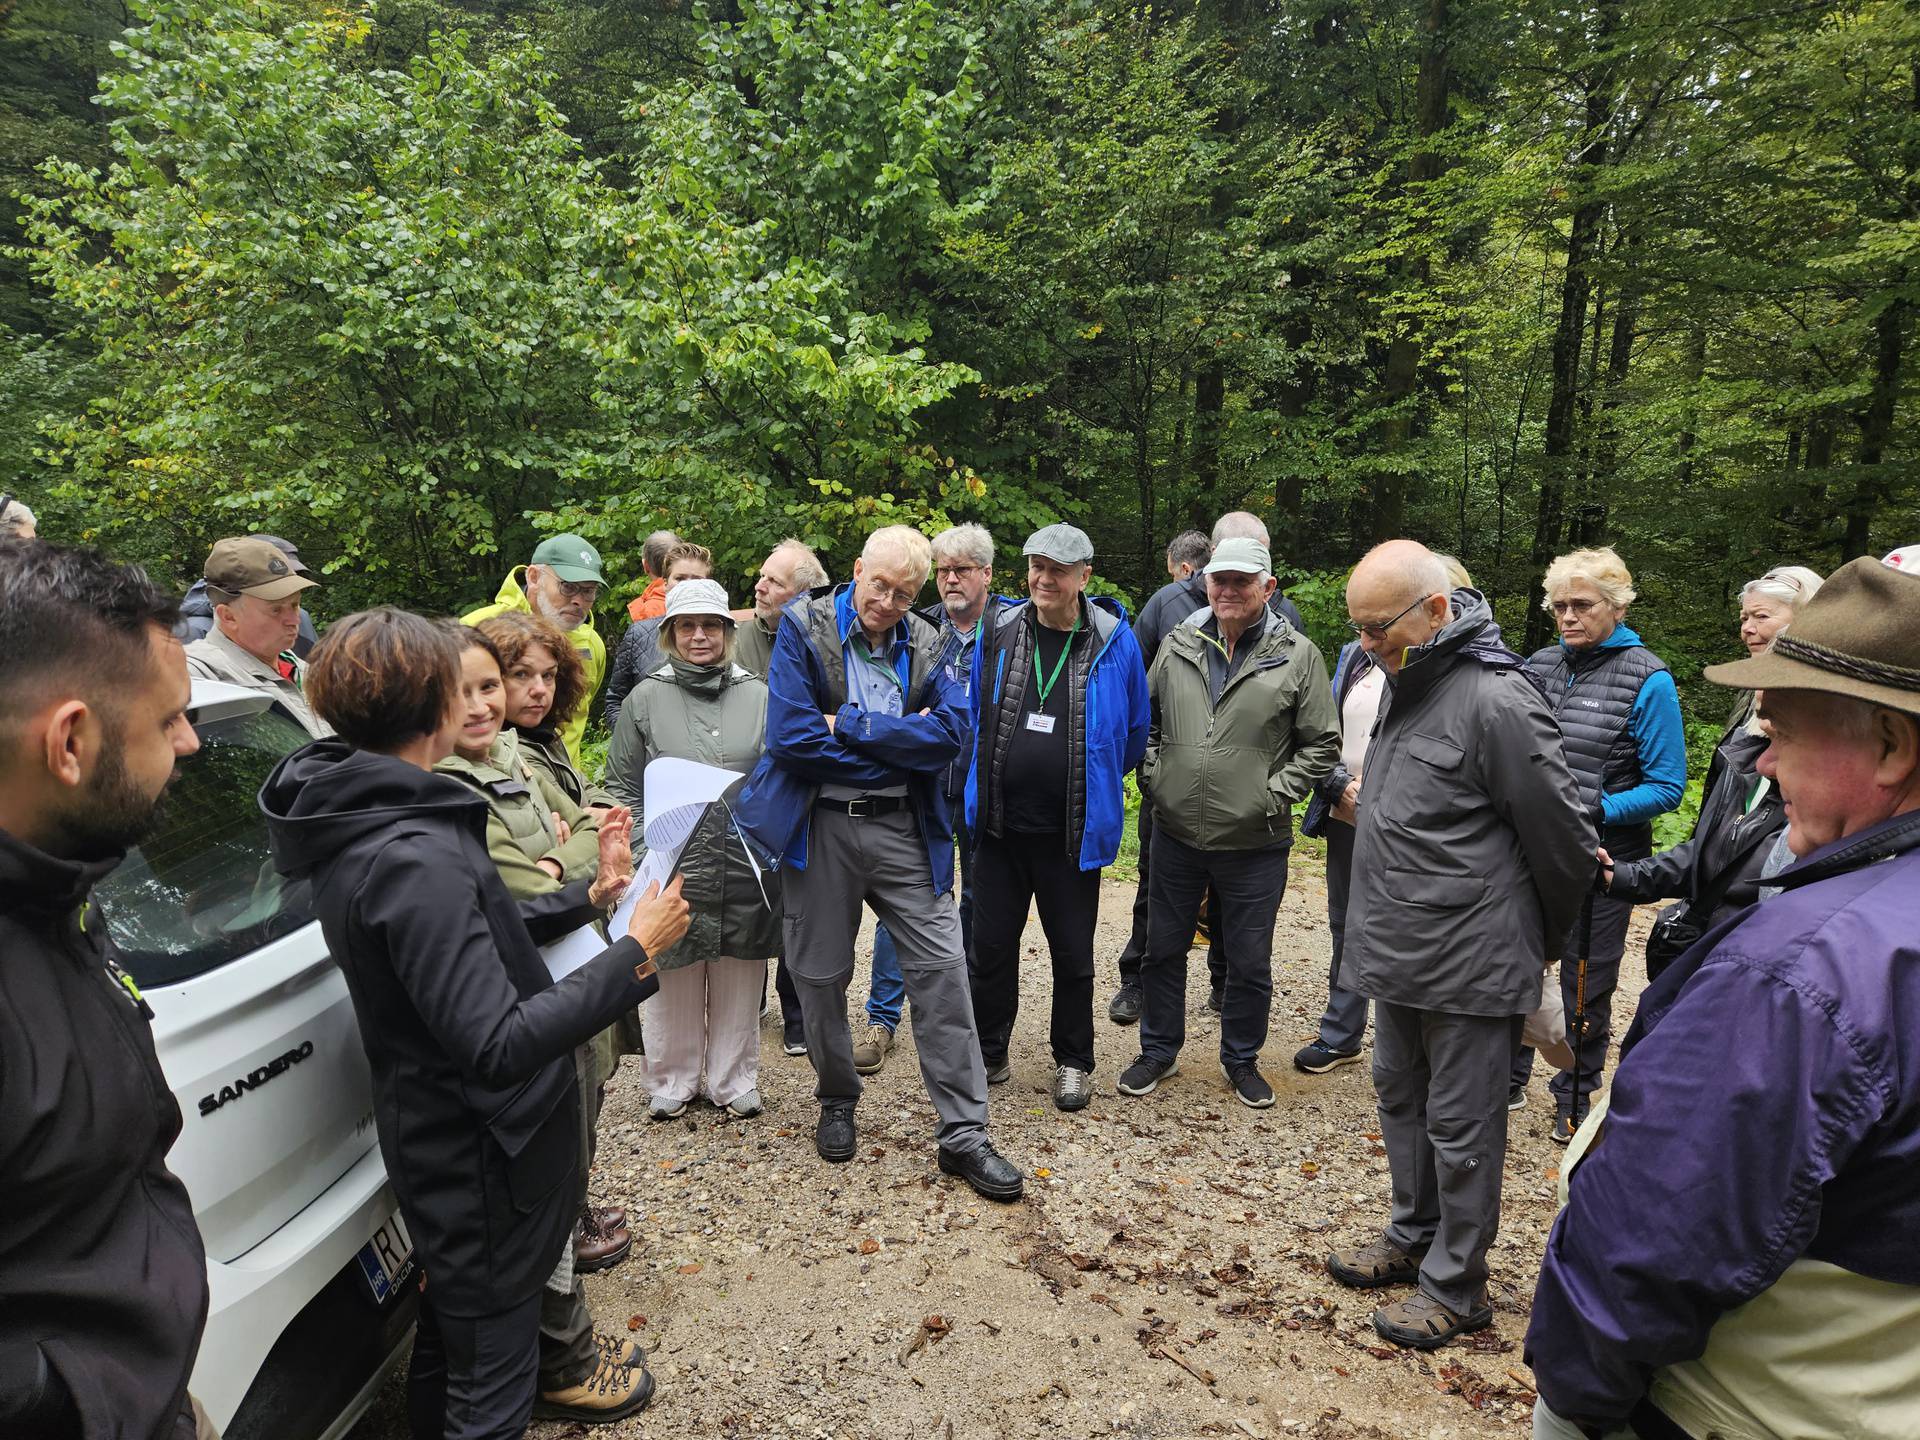 Međunarodna suradnja Hrvatske šume posjetili islandski šumari i estonski lovci